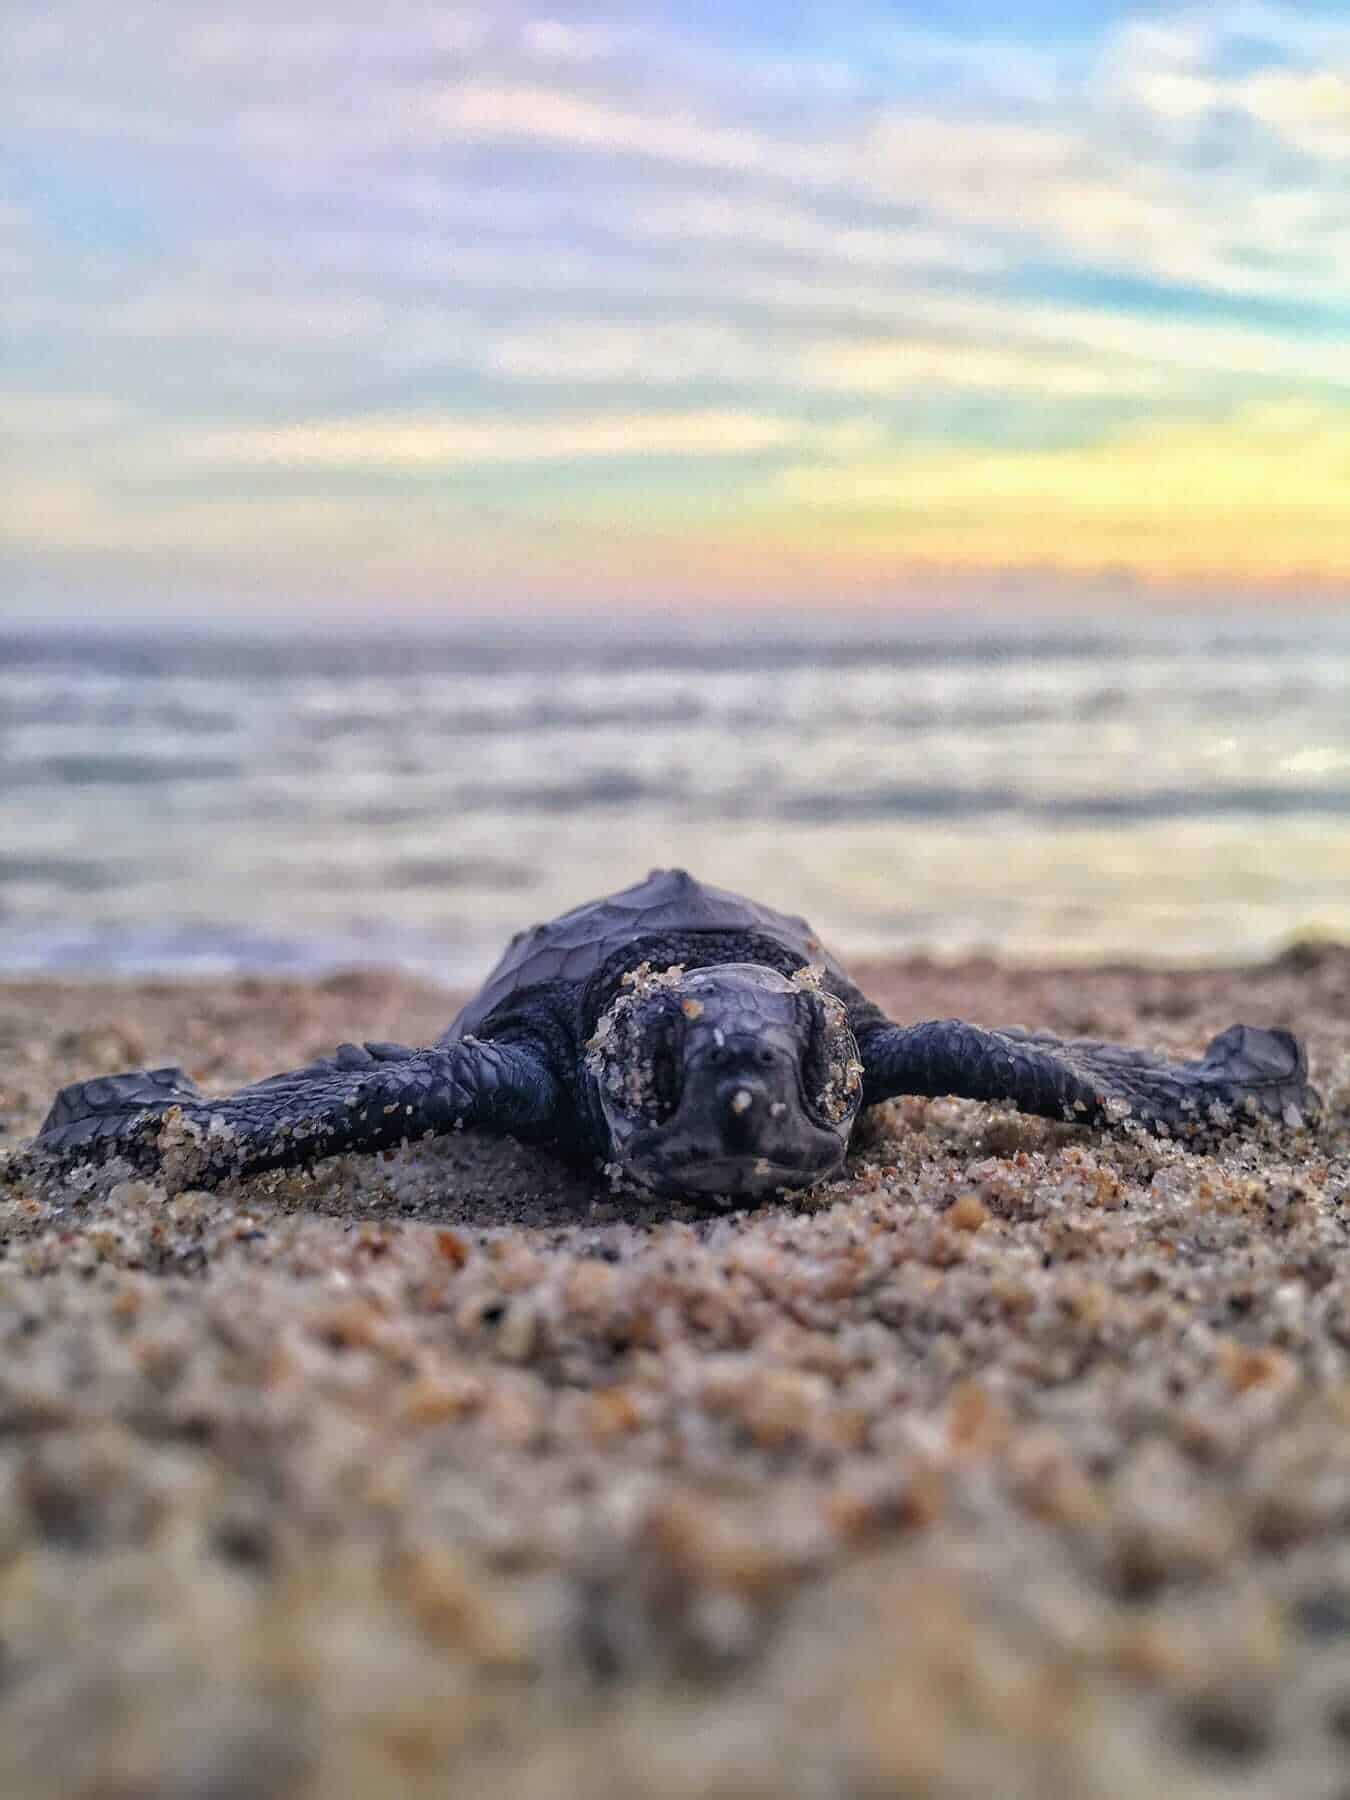 Turtles - Puerto Escondido